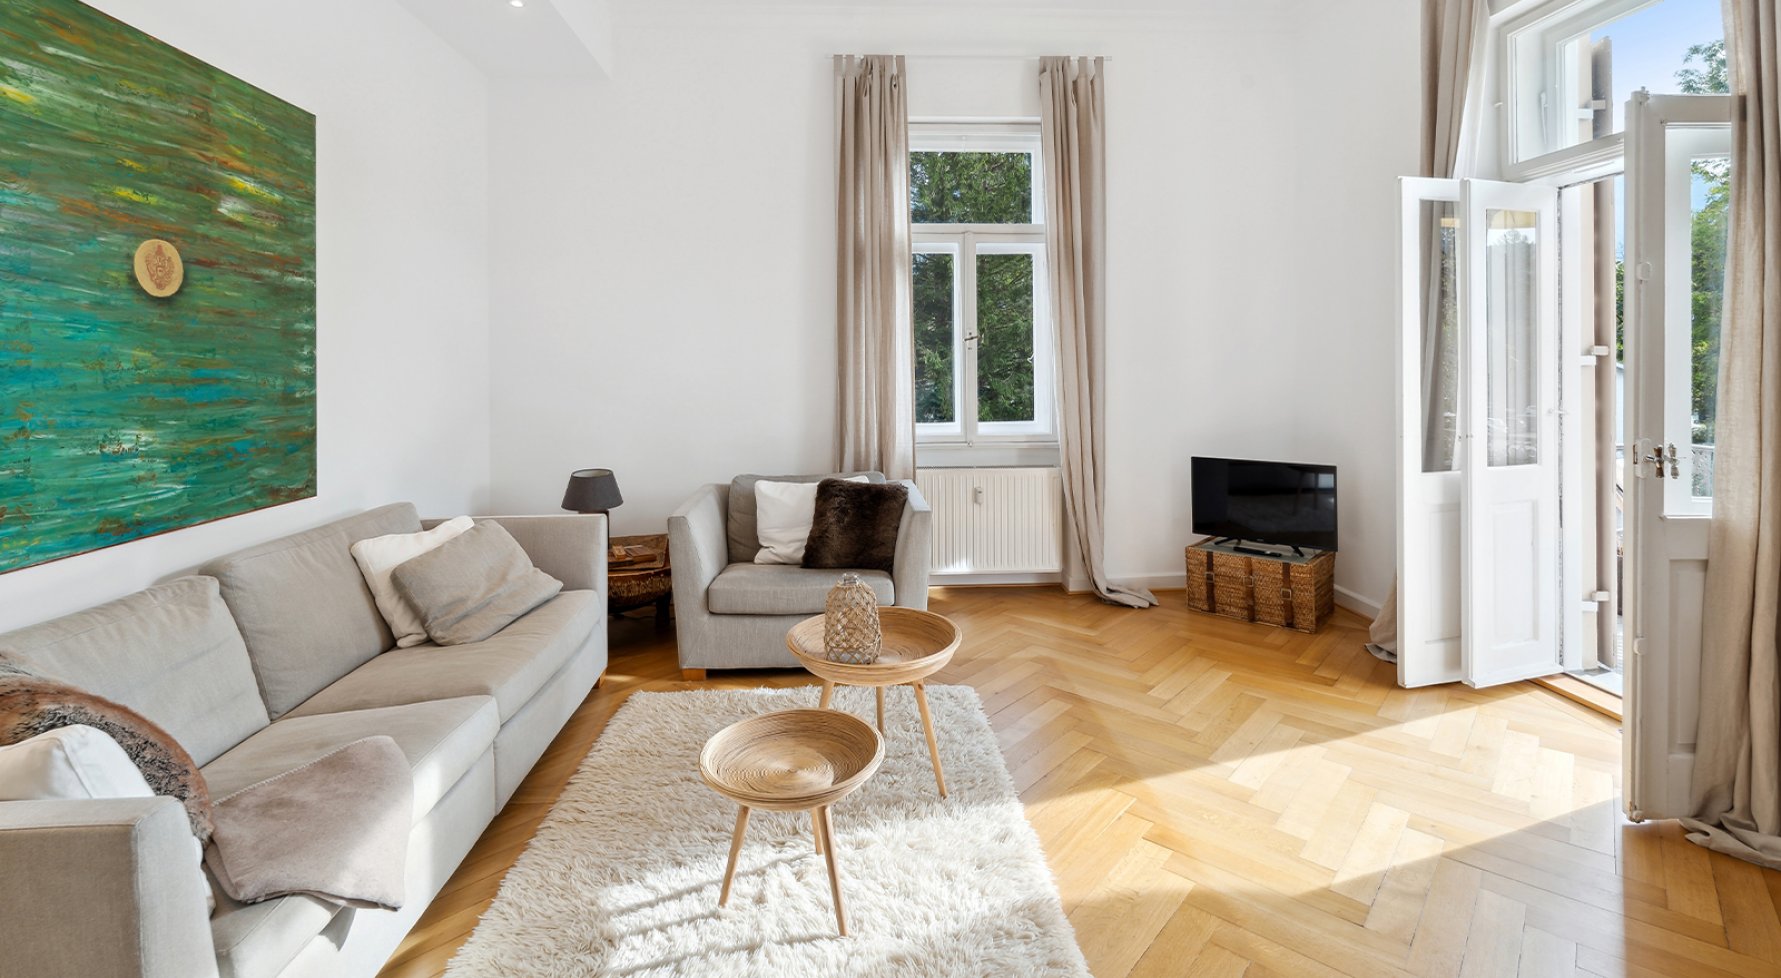 Immobilie in 83435 Bayern - Bad Reichenhall: Alles was das Herz begehrt!  Luxuriöse, modern möblierte 2-Zimmerwohnung - bild 1